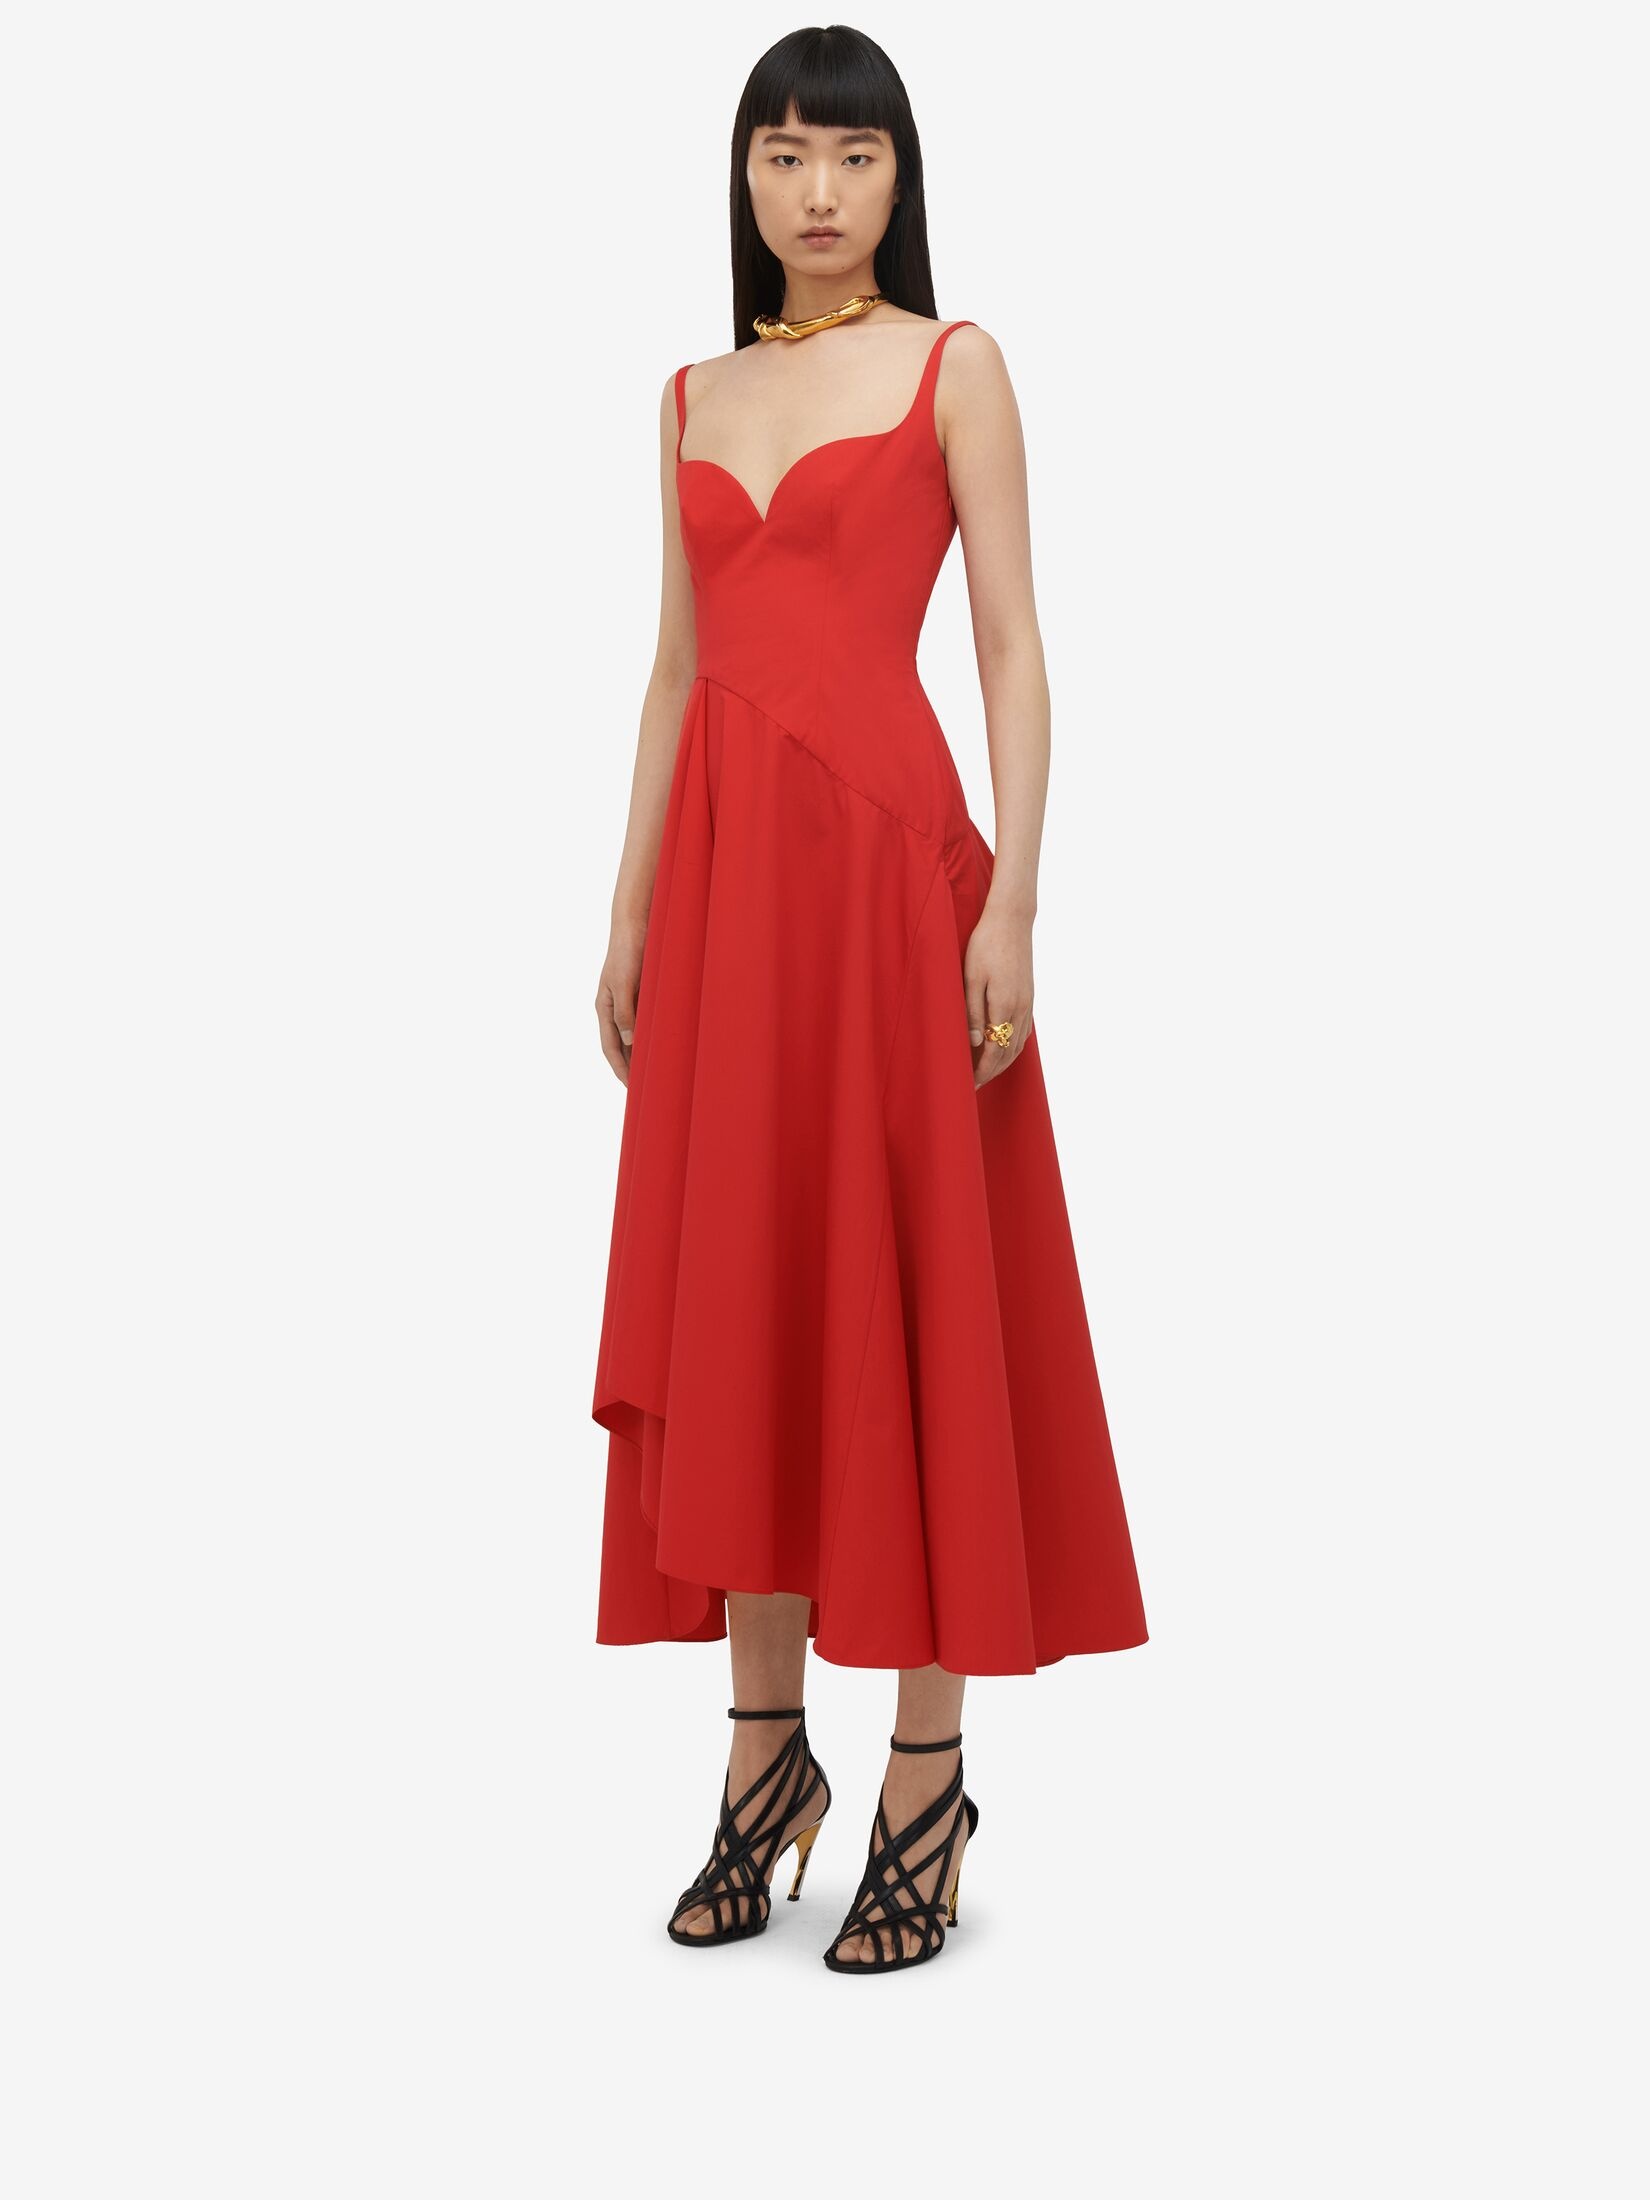 Women's Sweetheart Neckline Midi Dress in Lust Red - 5